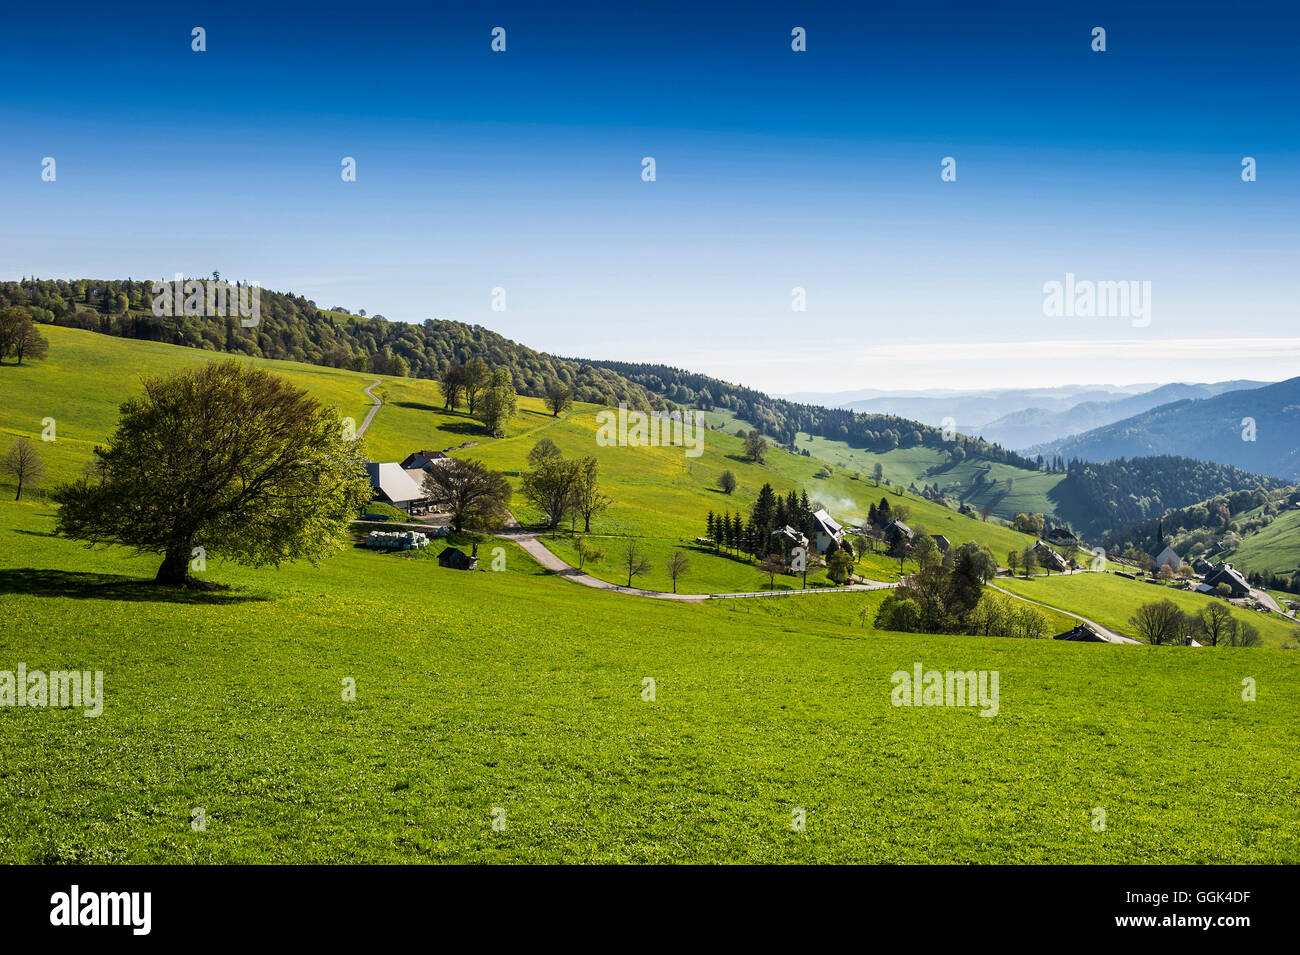 Schauinsland, Farm near Oberried, near Freiburg im Breisgau, Black Forest, Baden-Wuerttemberg, Germany Stock Photo